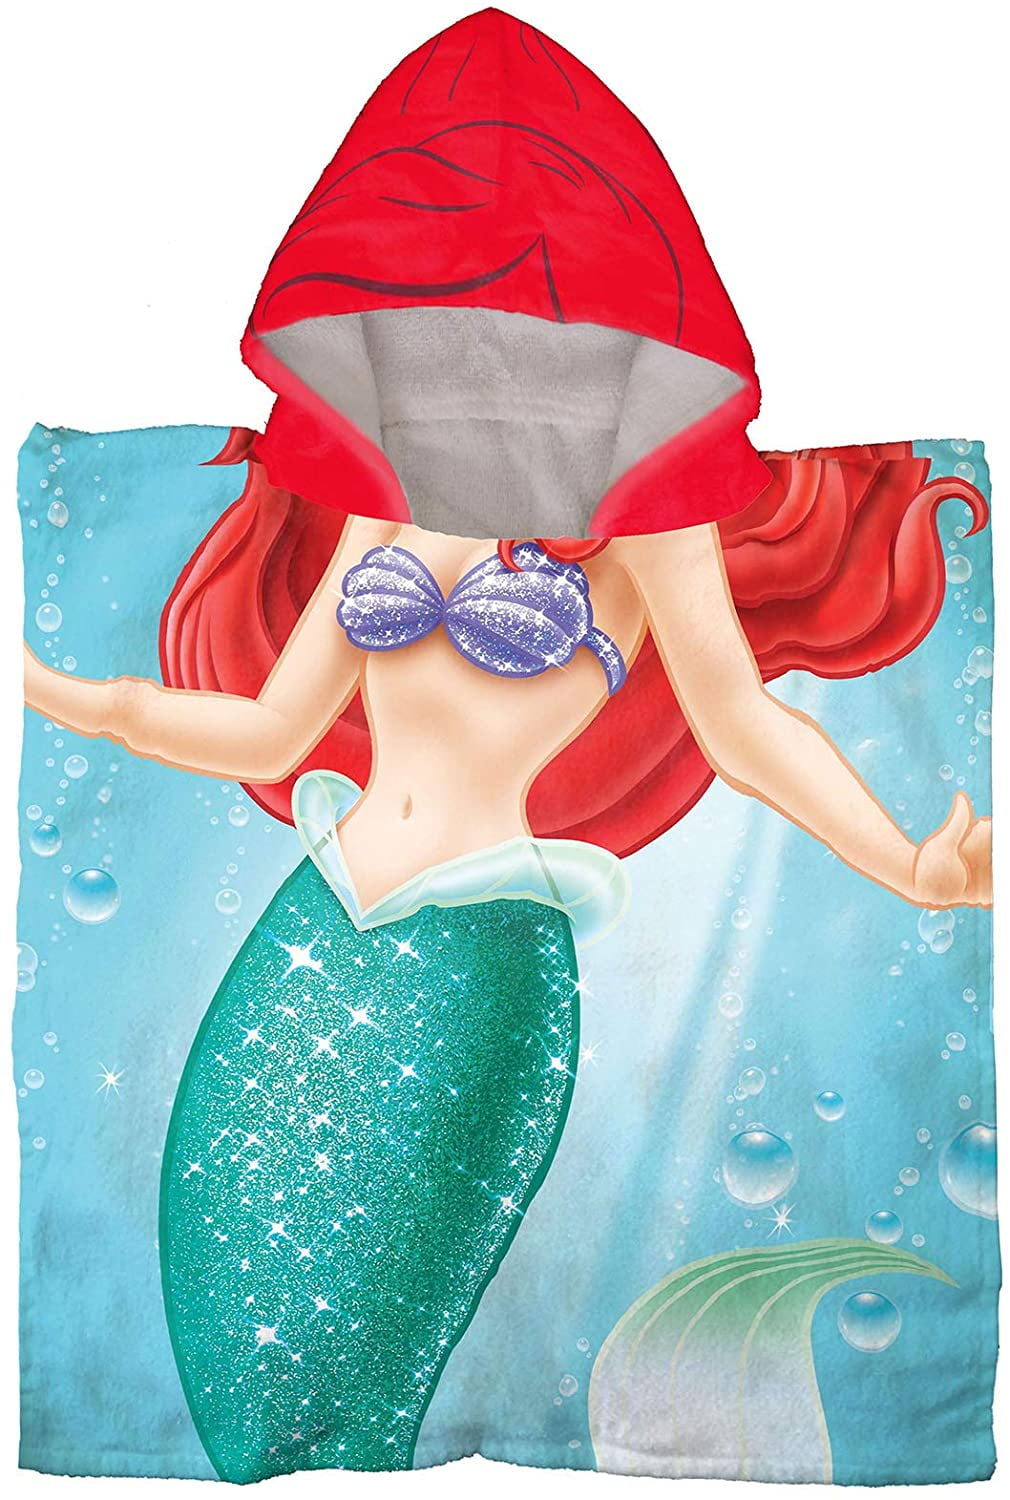 Franco Mermaid Hooded Beach Bath Poncho Towel Jay Franco & Sons NWT *V 